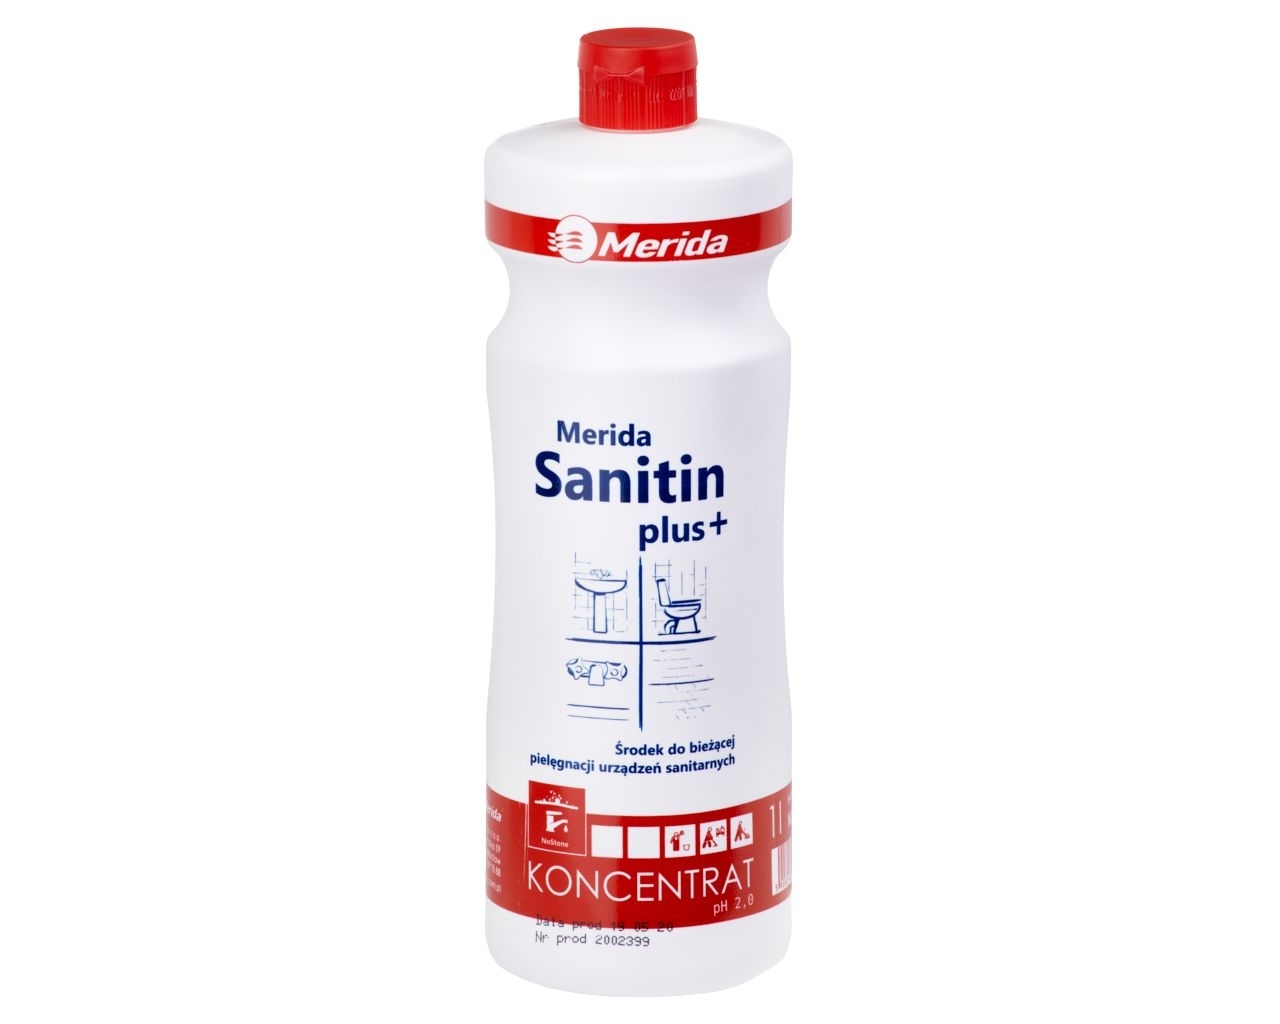 MERIDA SANITIN PLUS+ Kwaśny środek do bieżącej pielęgnacji urządzeń sanitarnych, butelka 1 l